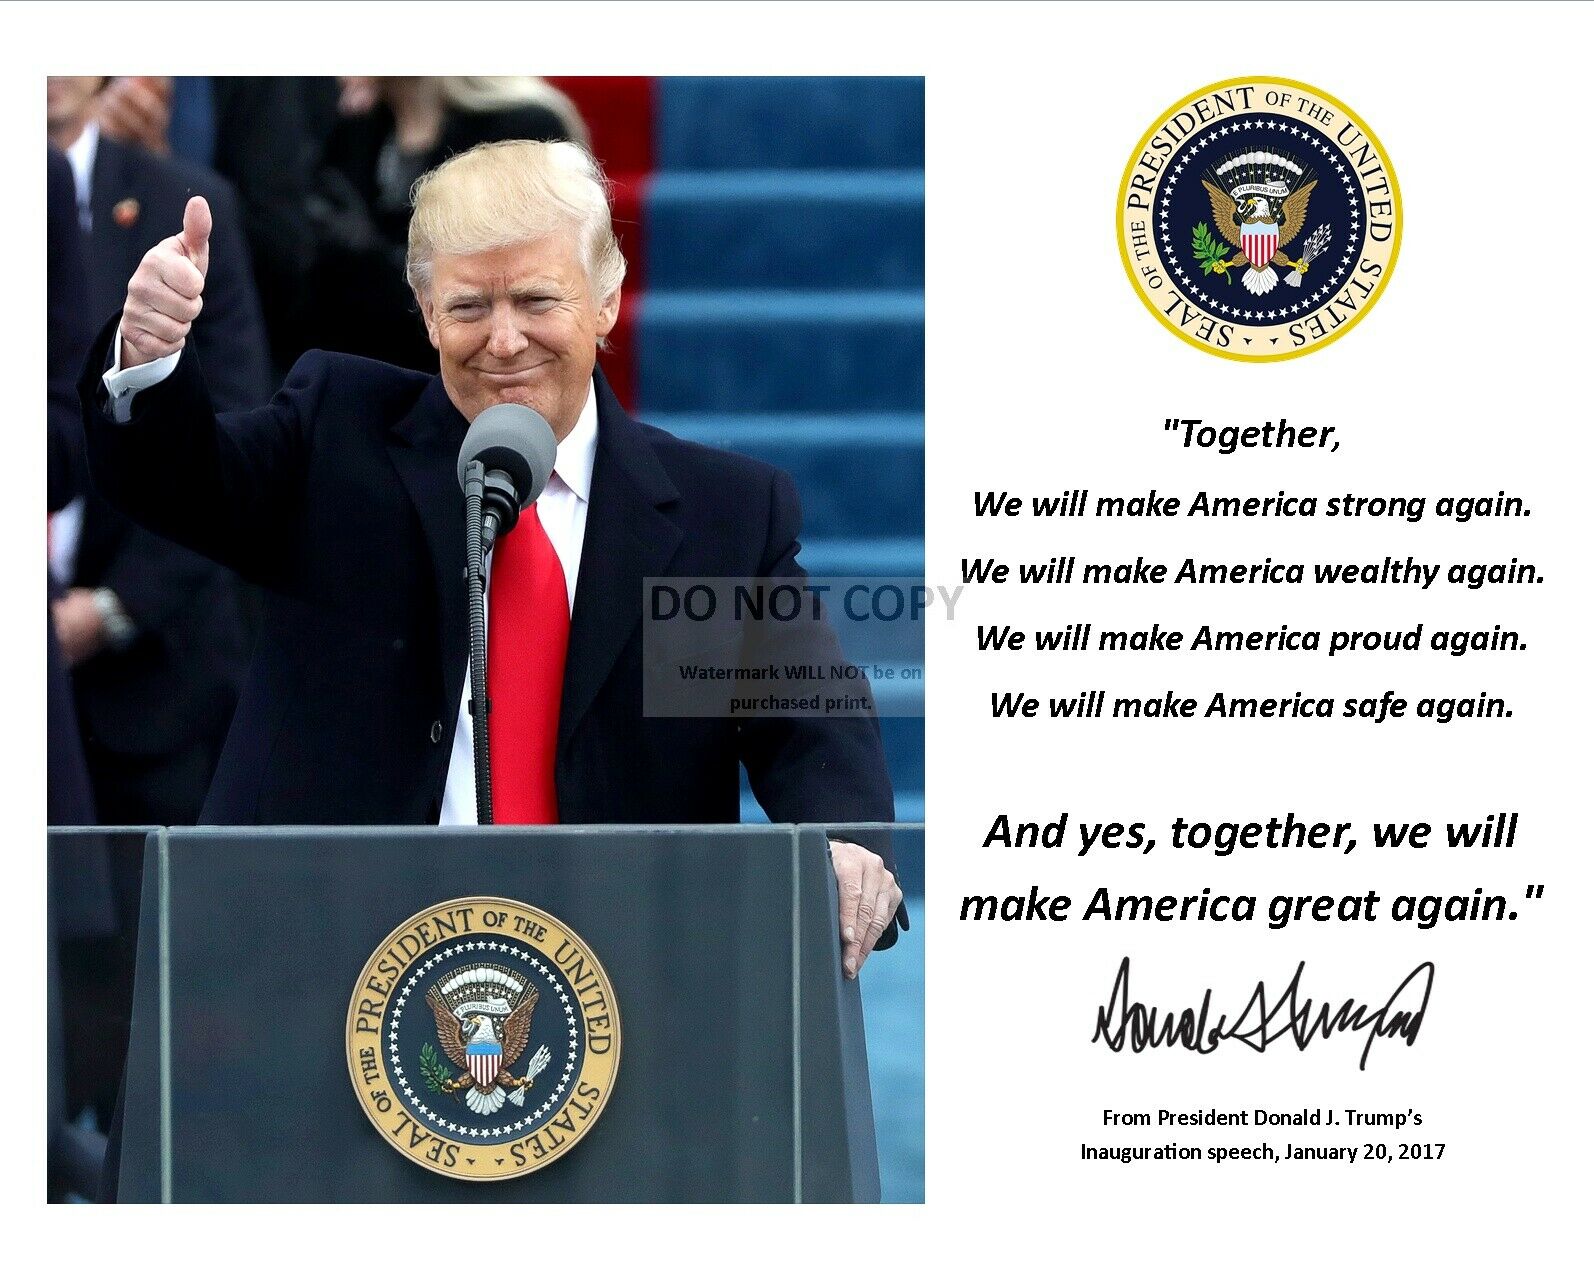 Donald Trump Maga Inauguration Quote W/ Facsimile Autograph - 8x10 Photo (pq027)